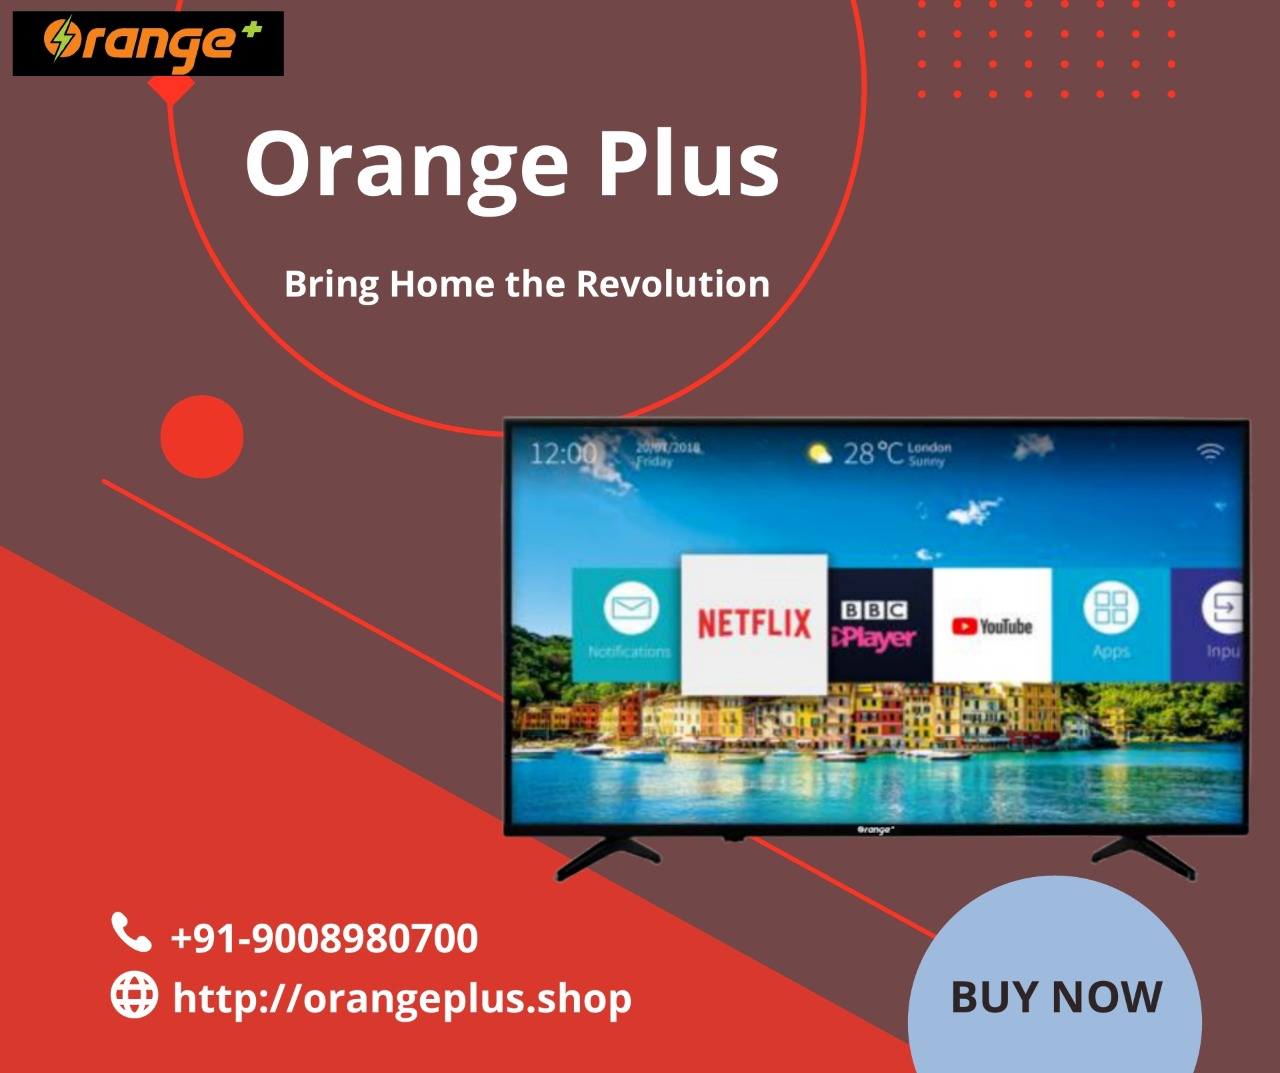 Orange Plus Bigger TVs at Best Price